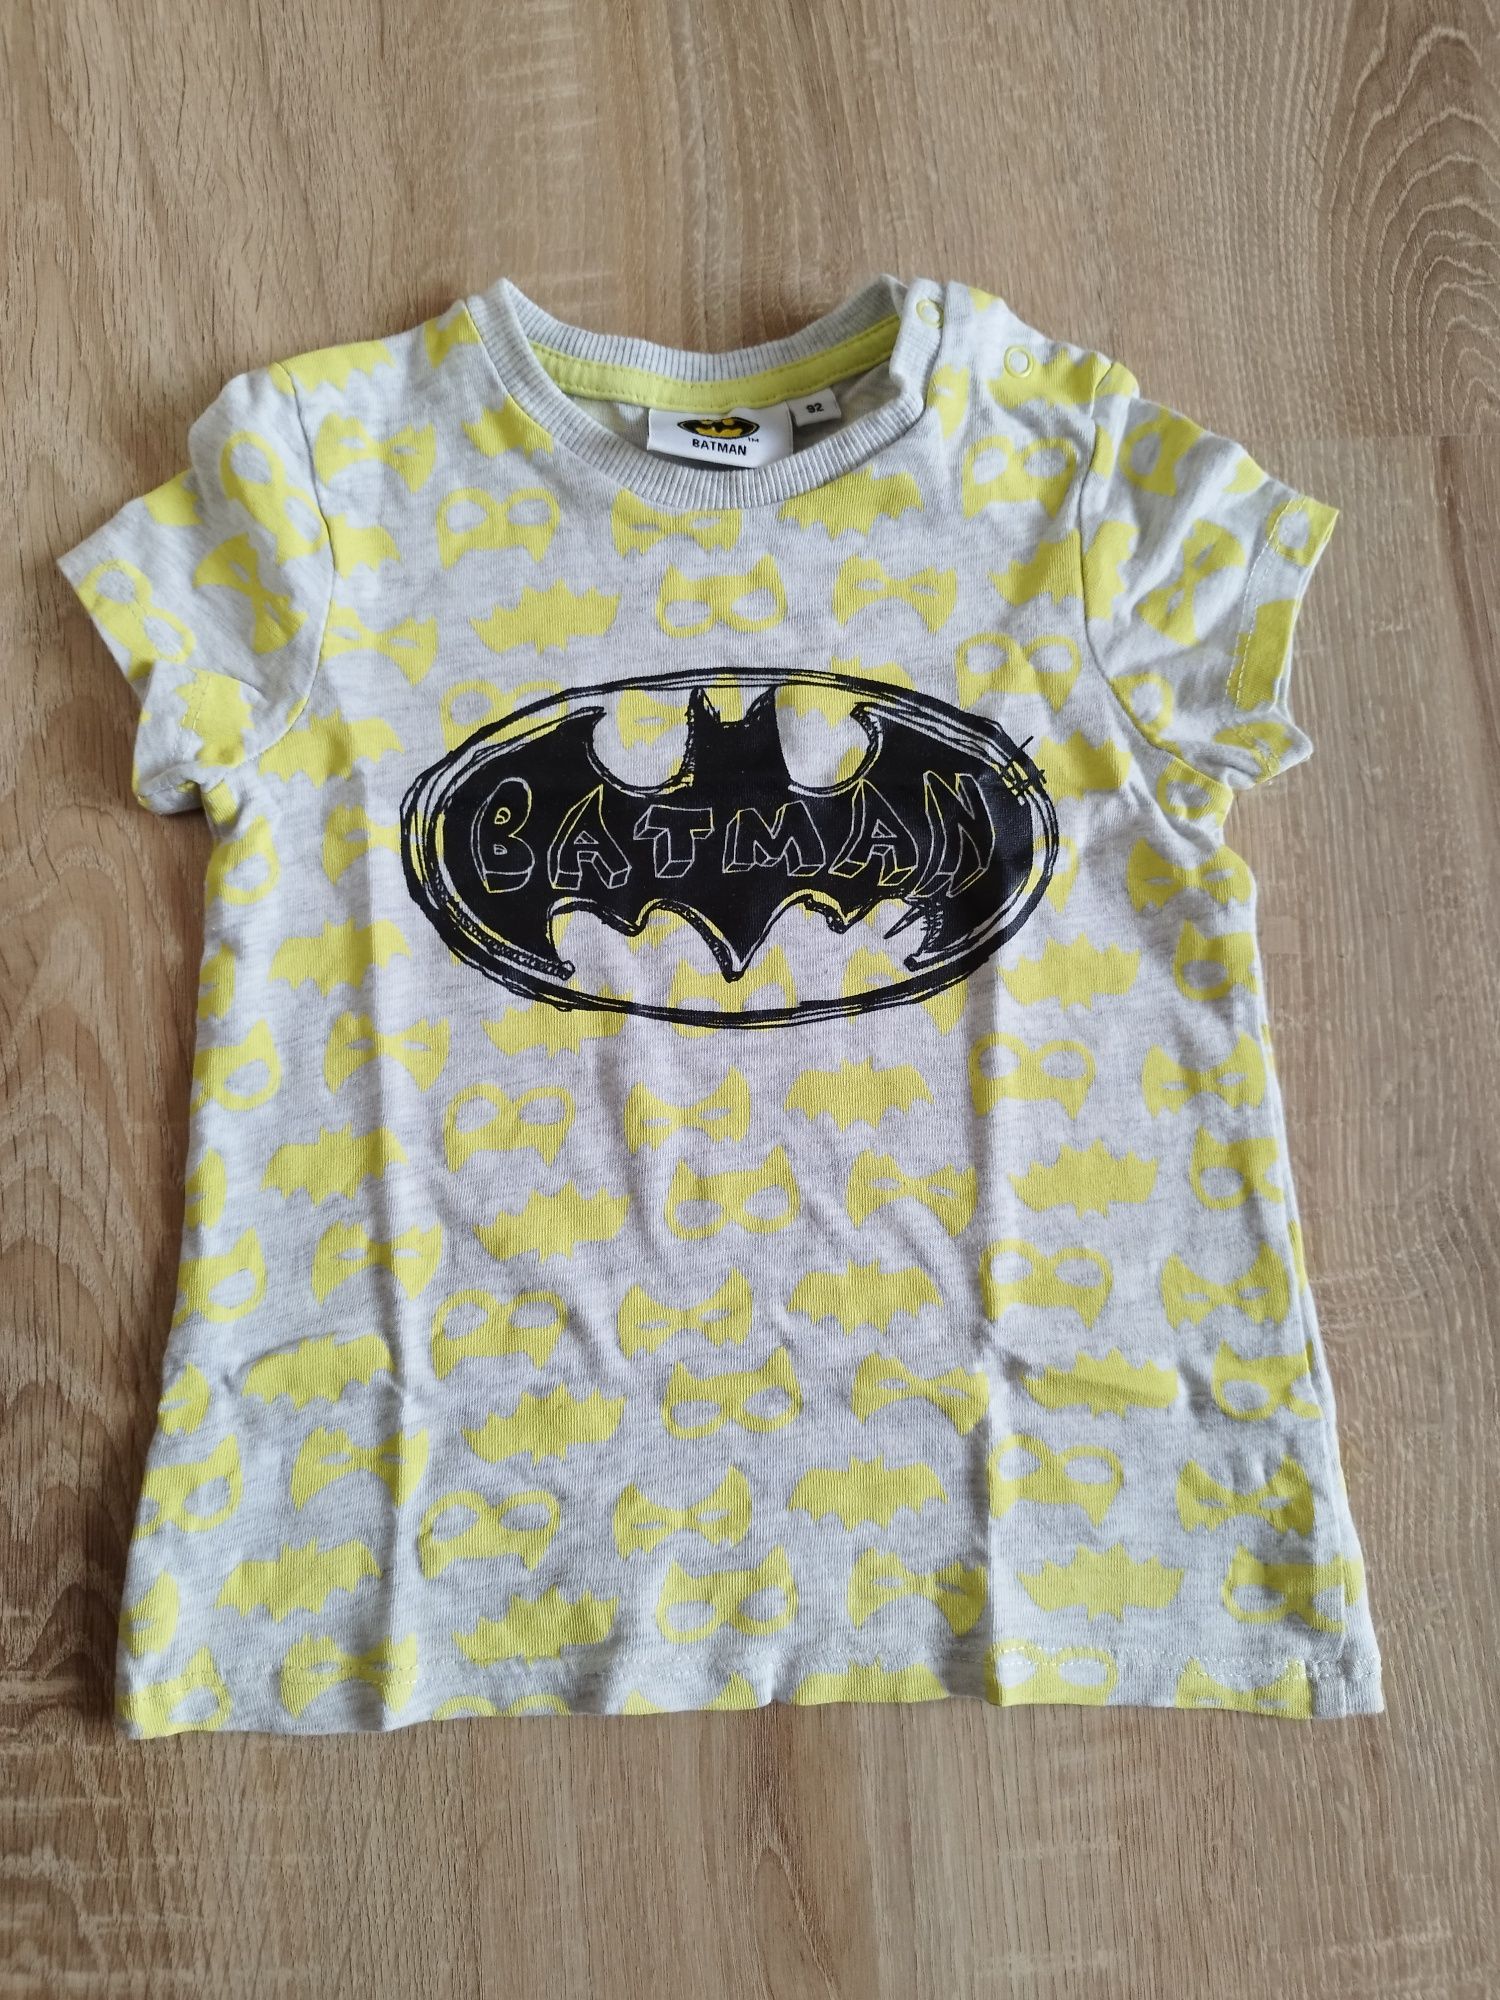 Koszulka, bluzka dla chłopca Batman R.86/92 krótki rękaw